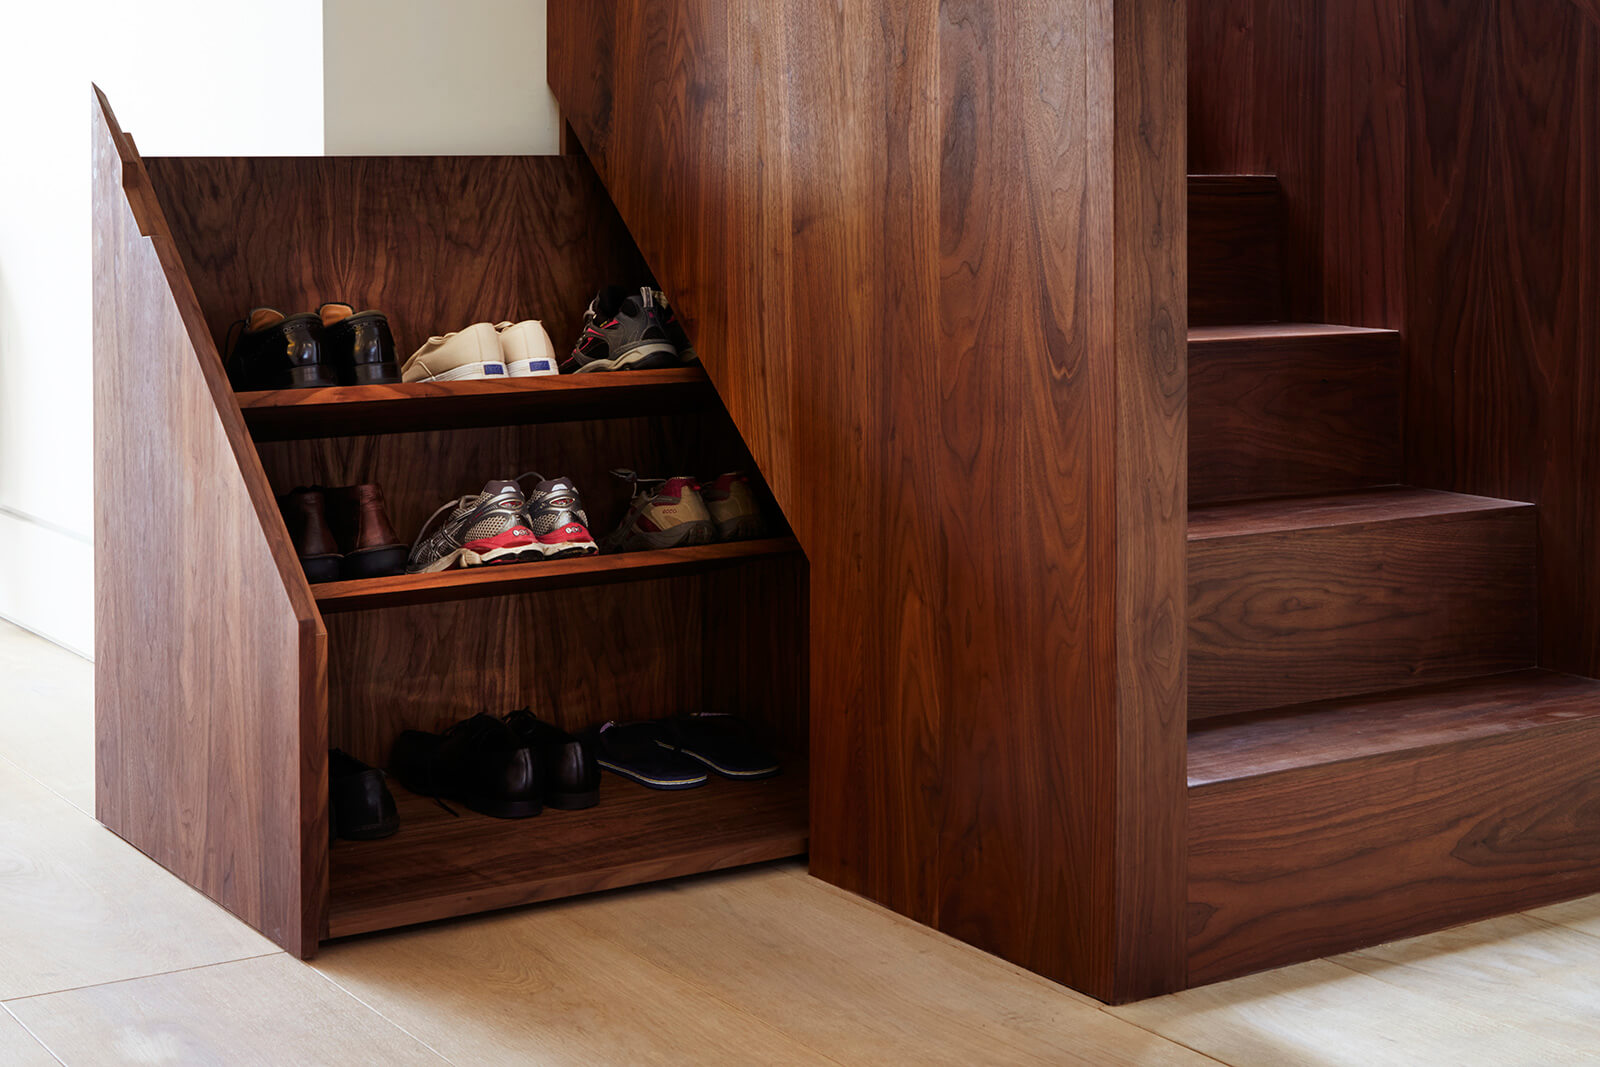 Обувной шкаф под лестницей